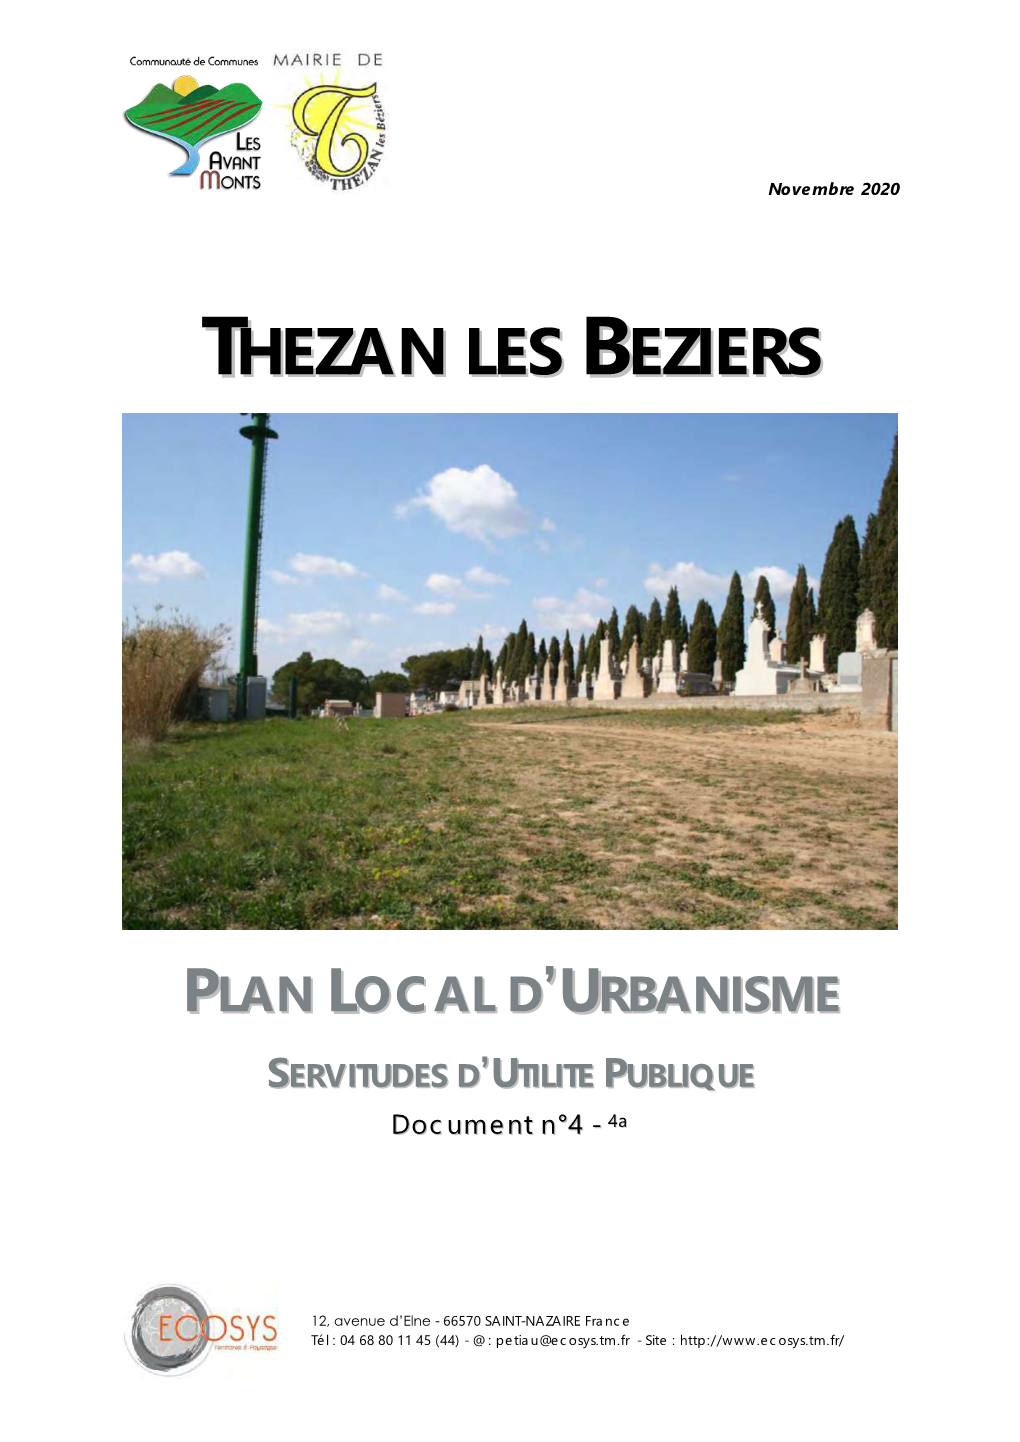 Thezan Les Beziers